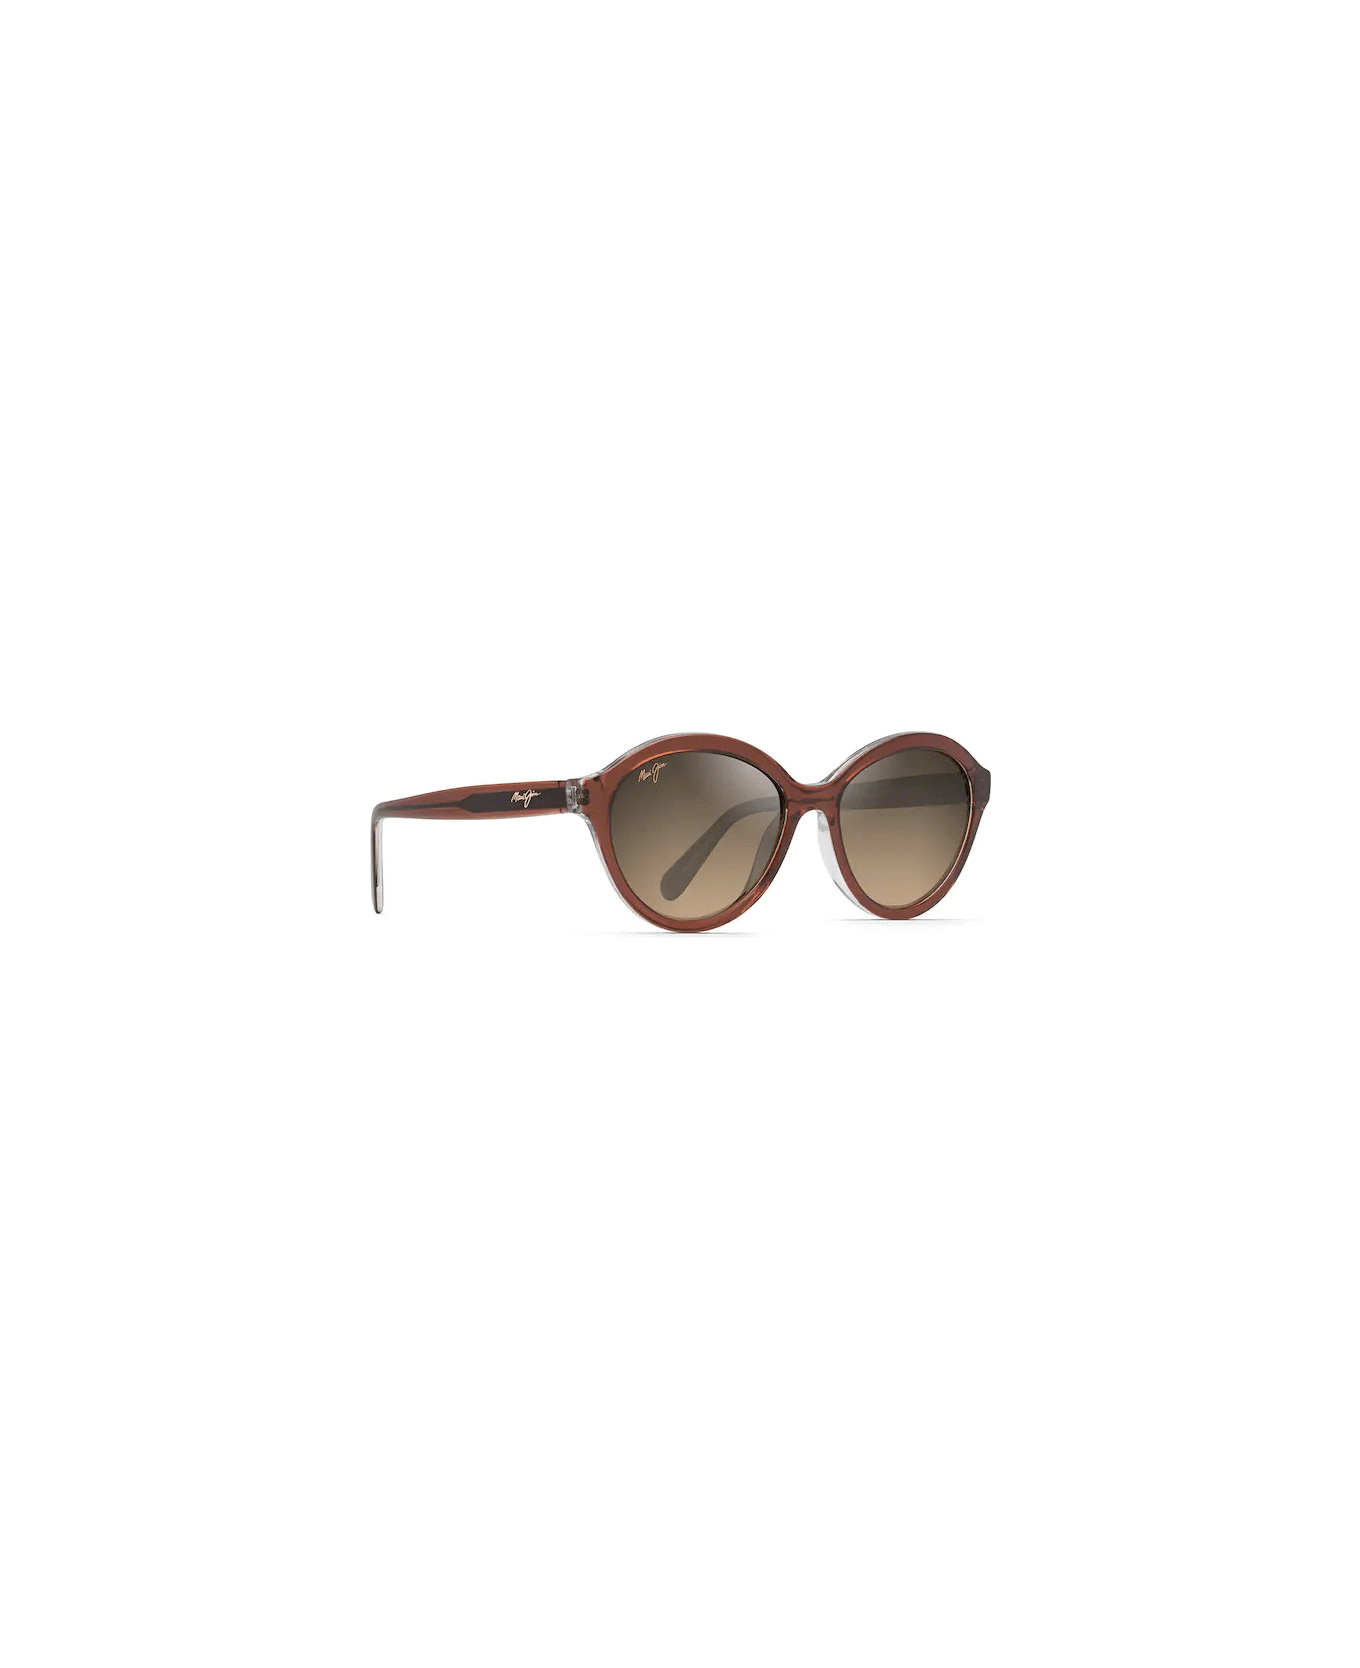 Maui Jim Mariana 828 25E Sunglasses